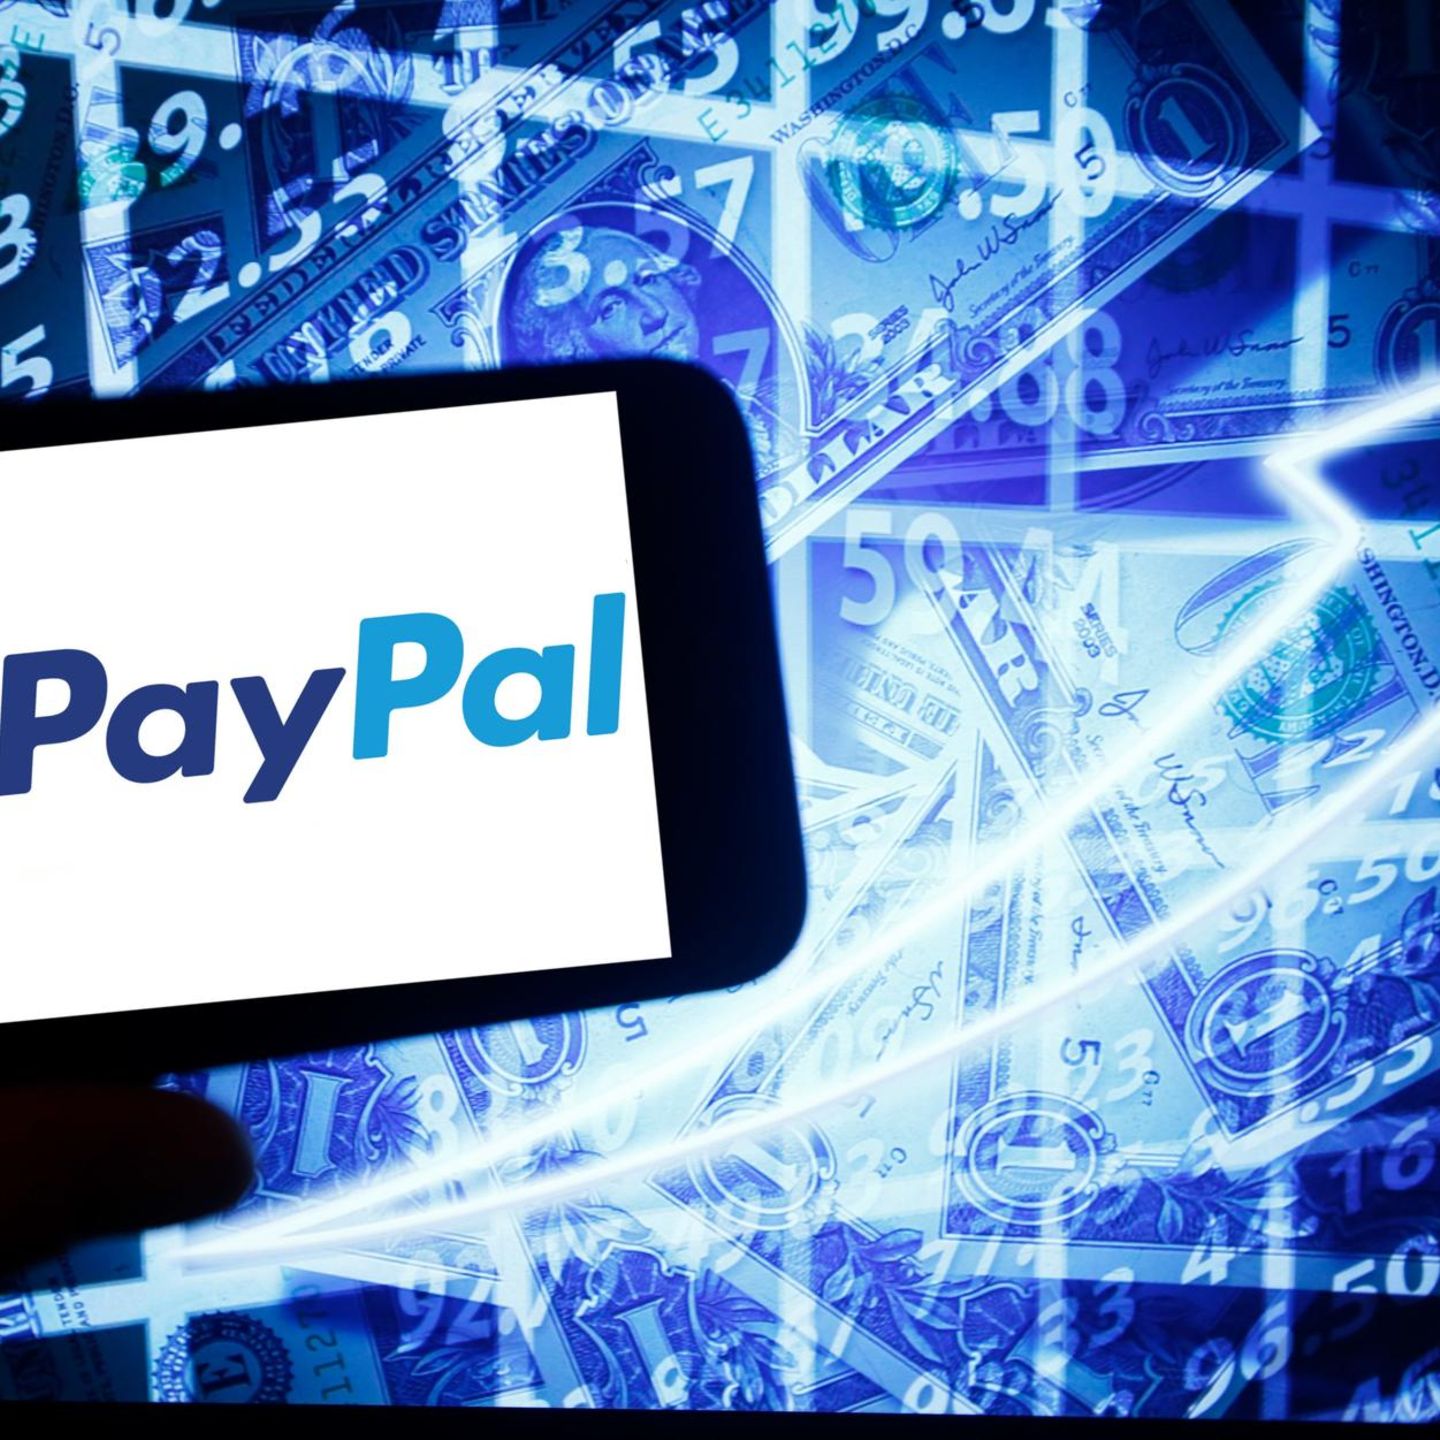 Ebay Kleinanzeigen Vor Dieser Paypal Betrugsmasche Warnt Die Polizei Stern De